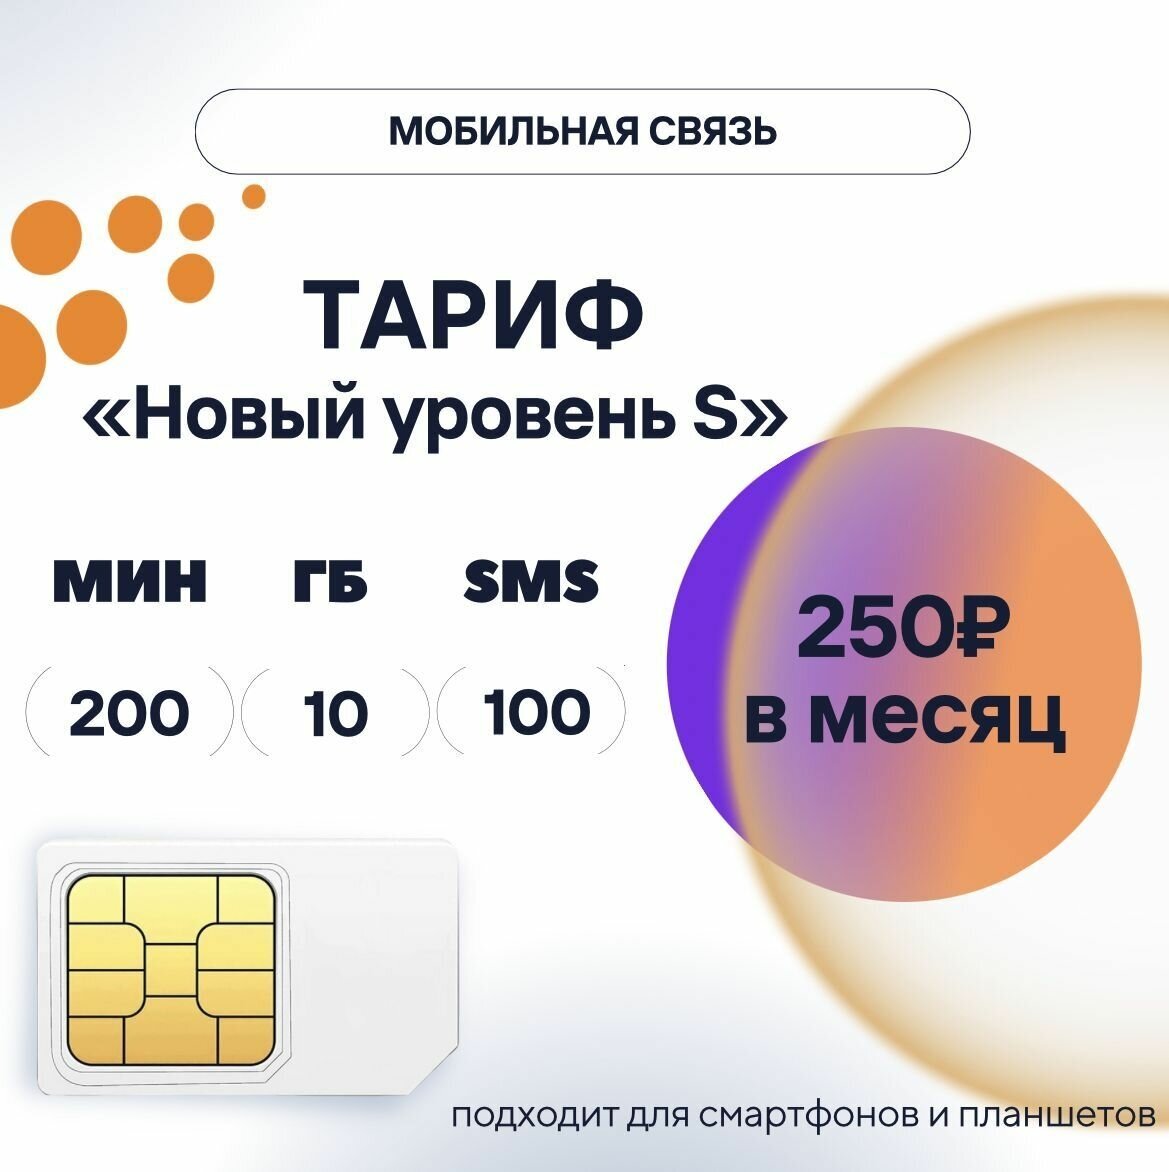 SIM-карта тариф "Новый уровень S" за 250 руб/мес сим карта для телефона